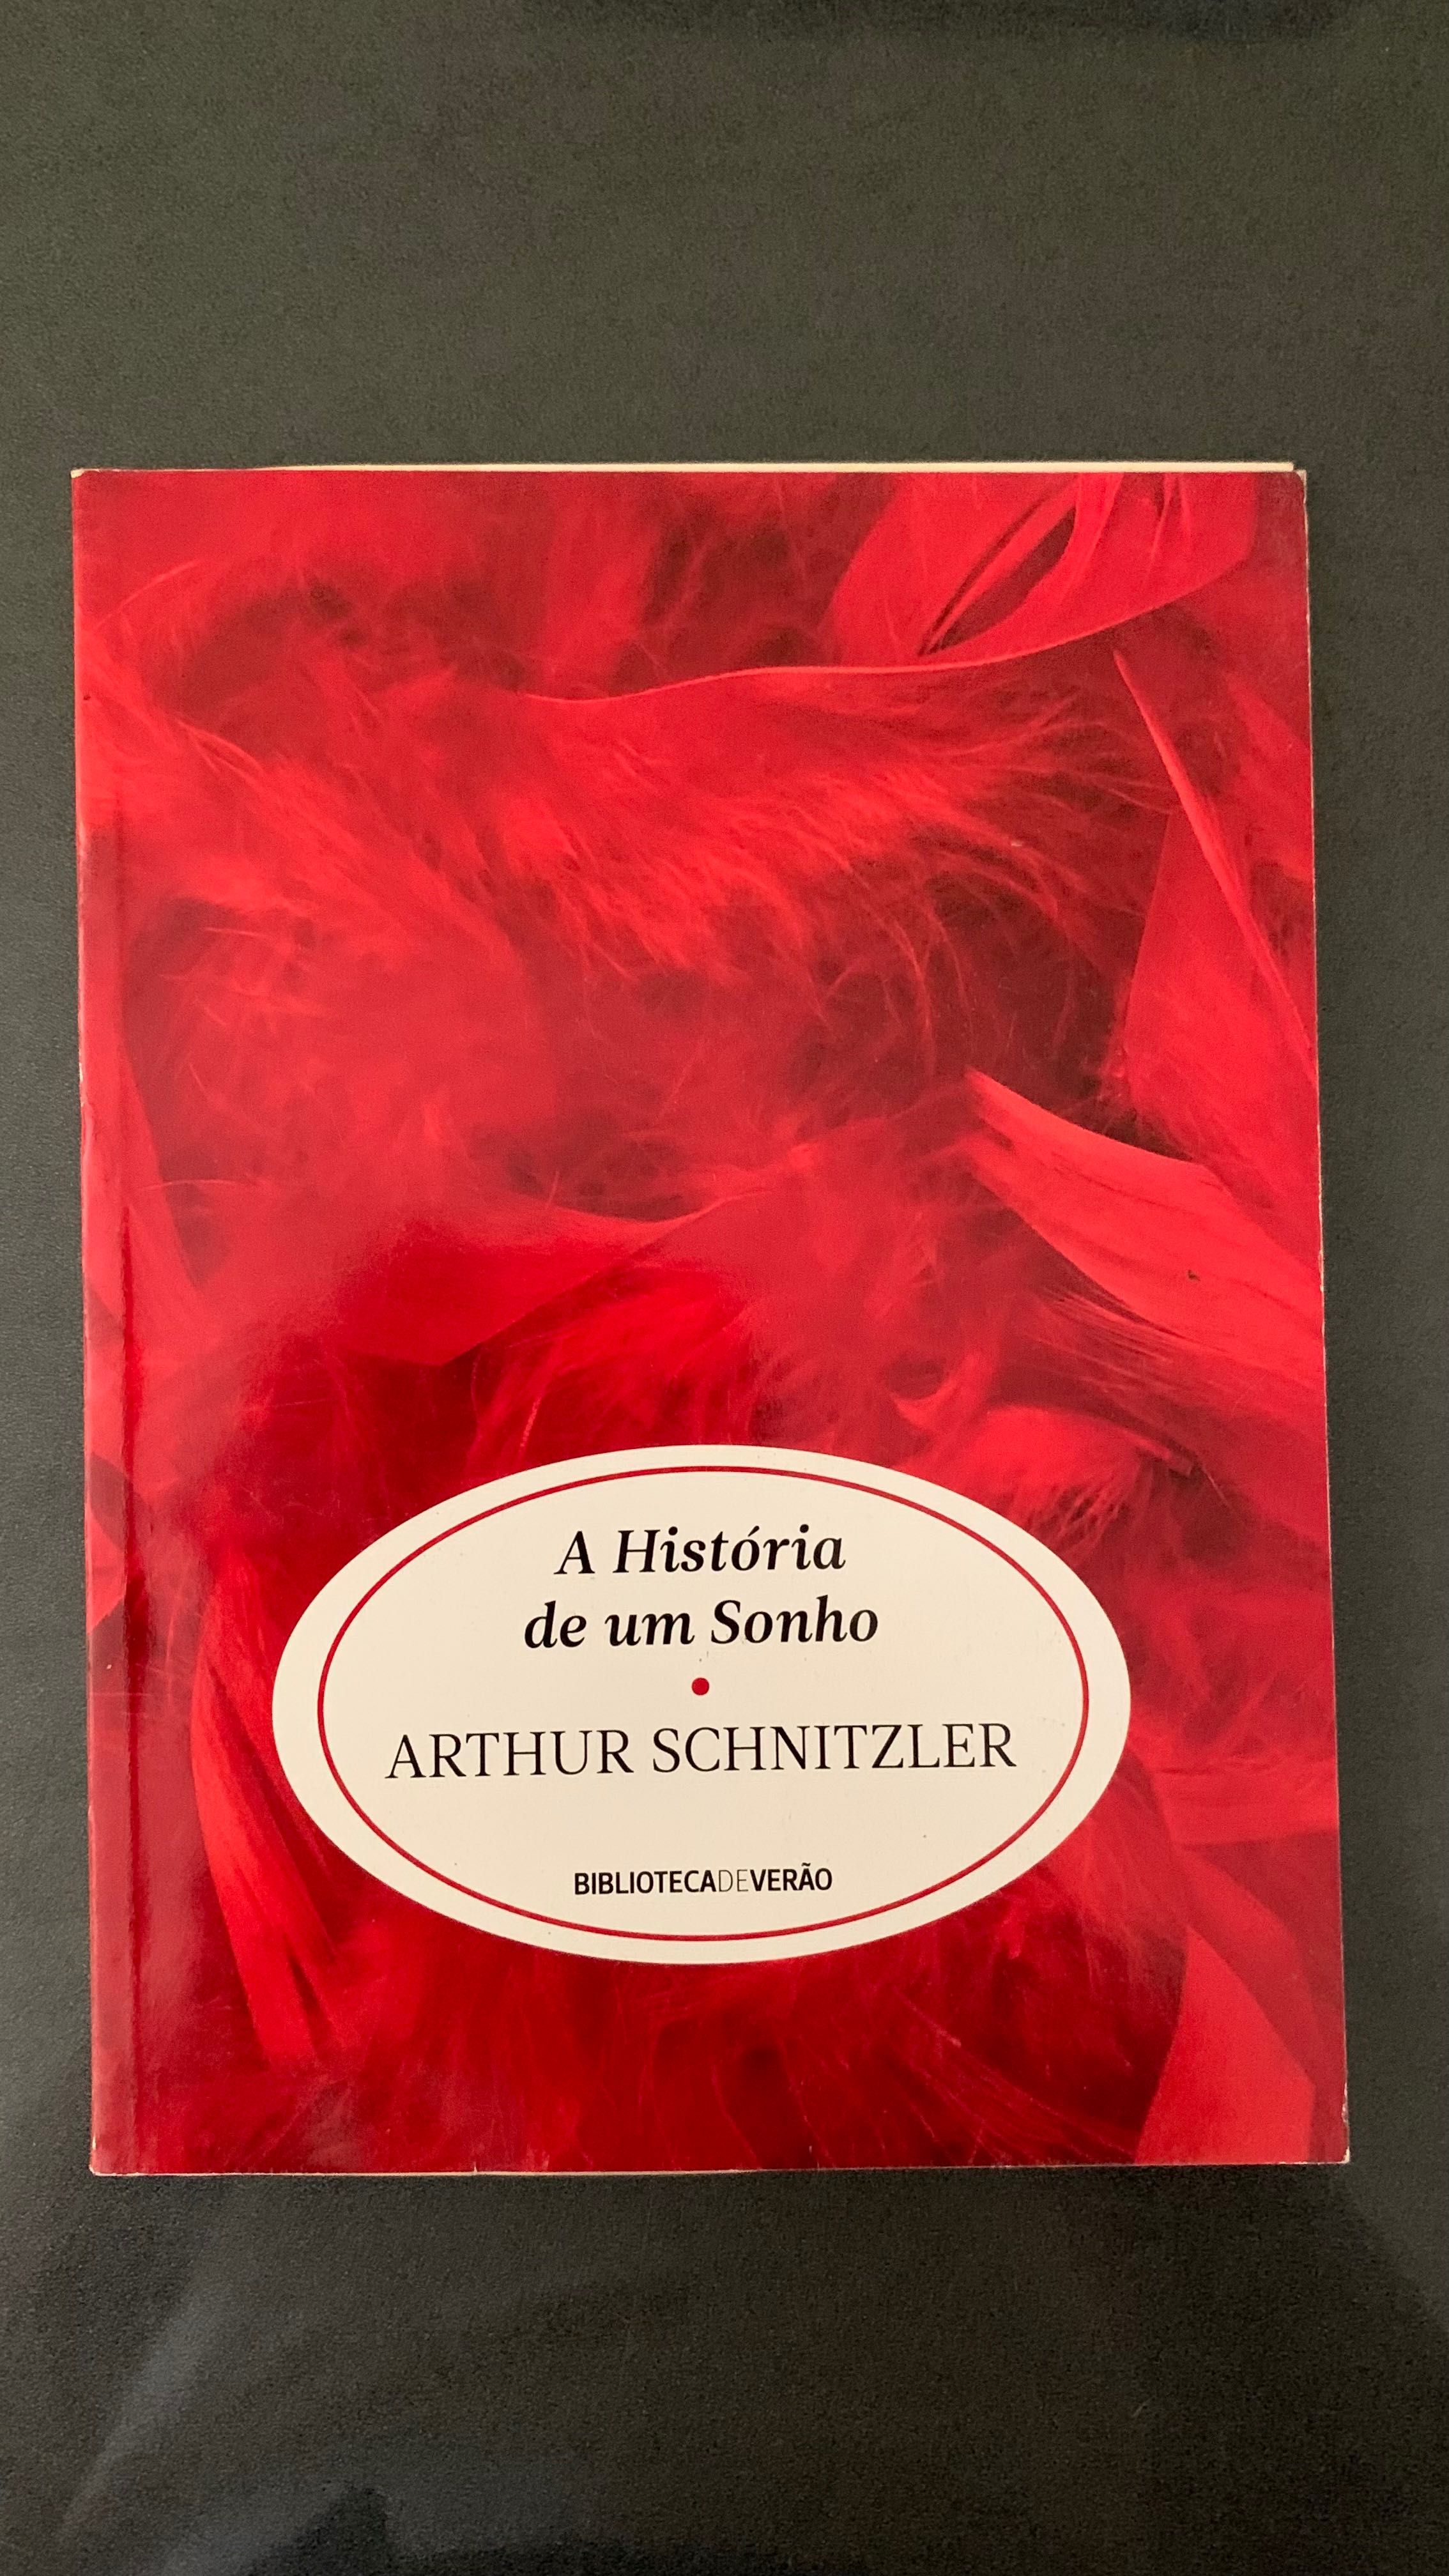 Livro “A história de um sonho” de Arthur Schnitzler